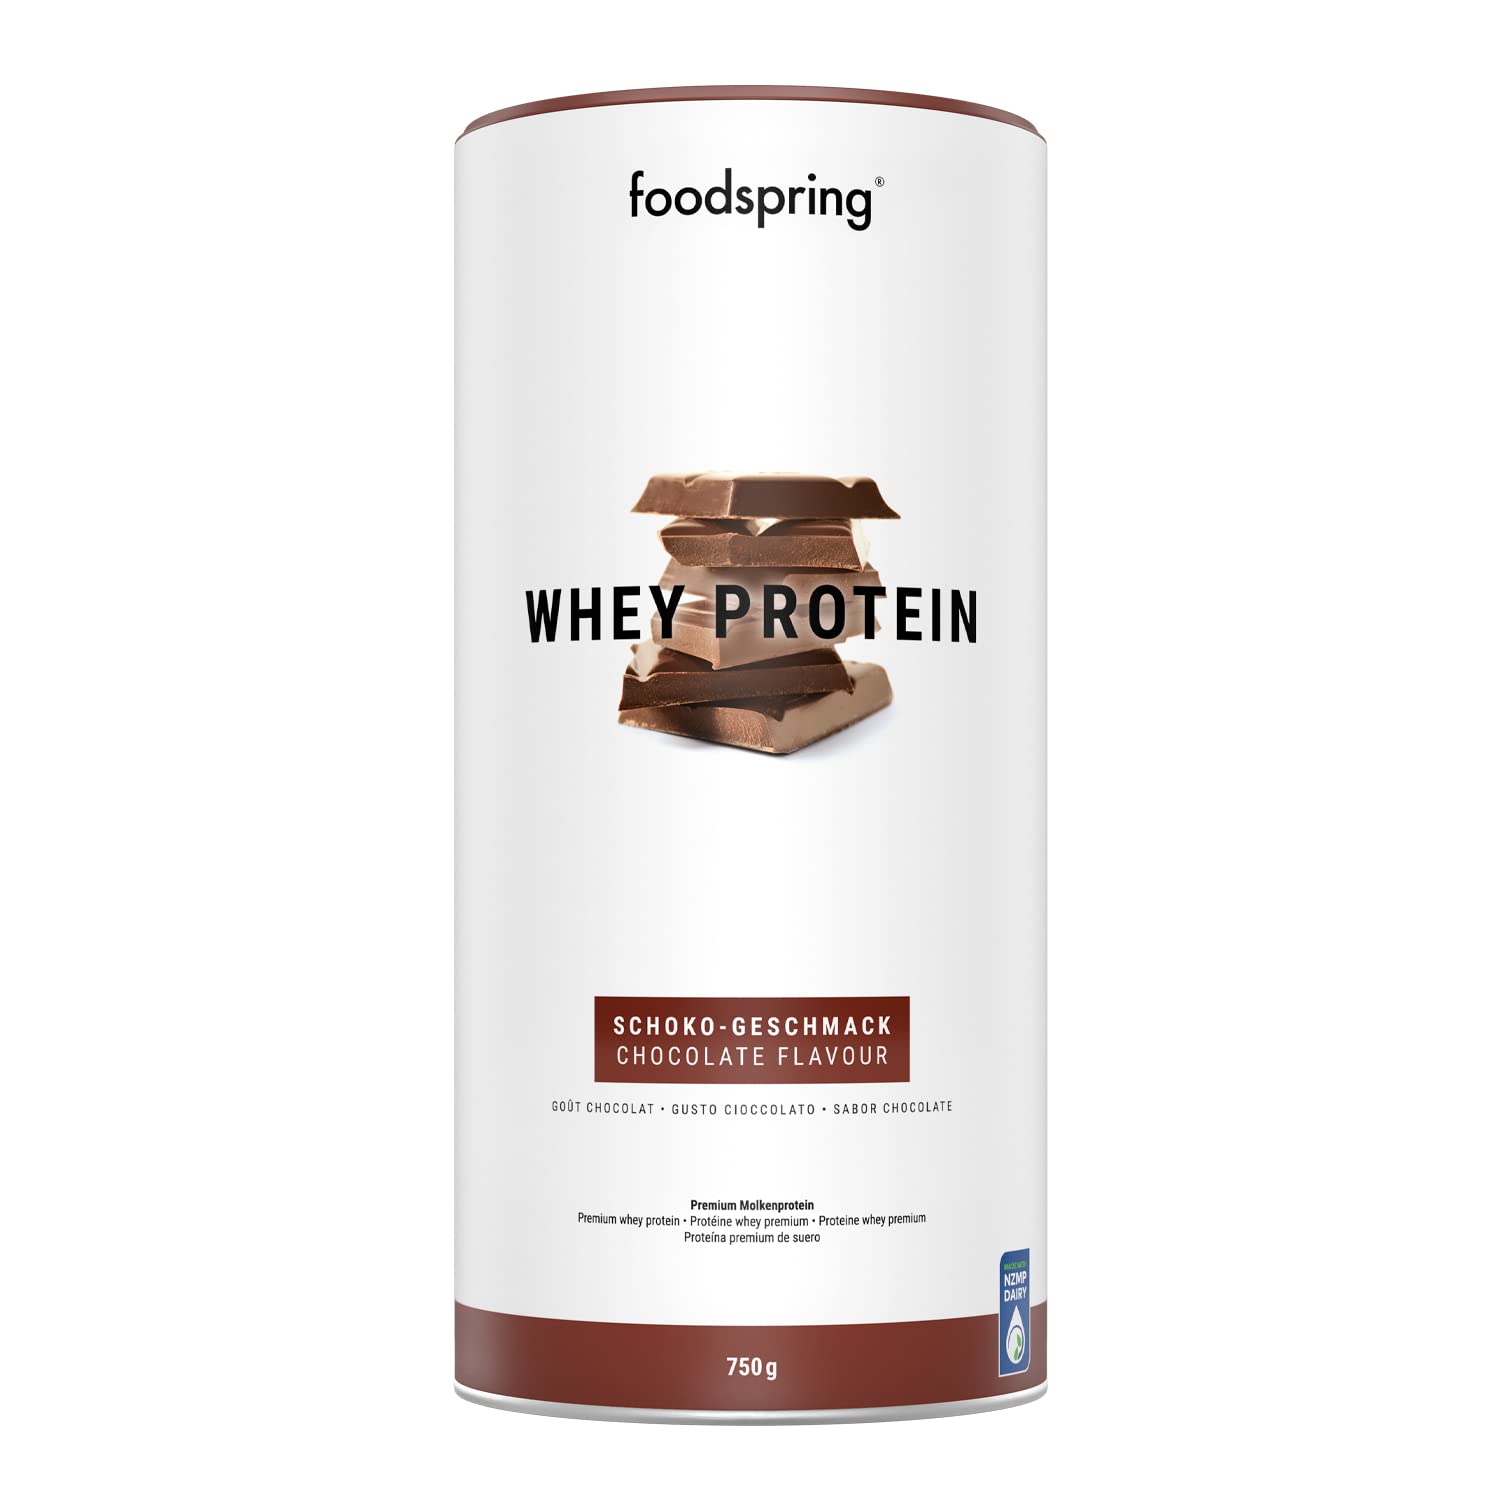 foodspring-Whey-Proteina-Polvo-Chocolate-24g-de-proteina-para-construccion-muscular-perfectamente-soluble-leche-de-0